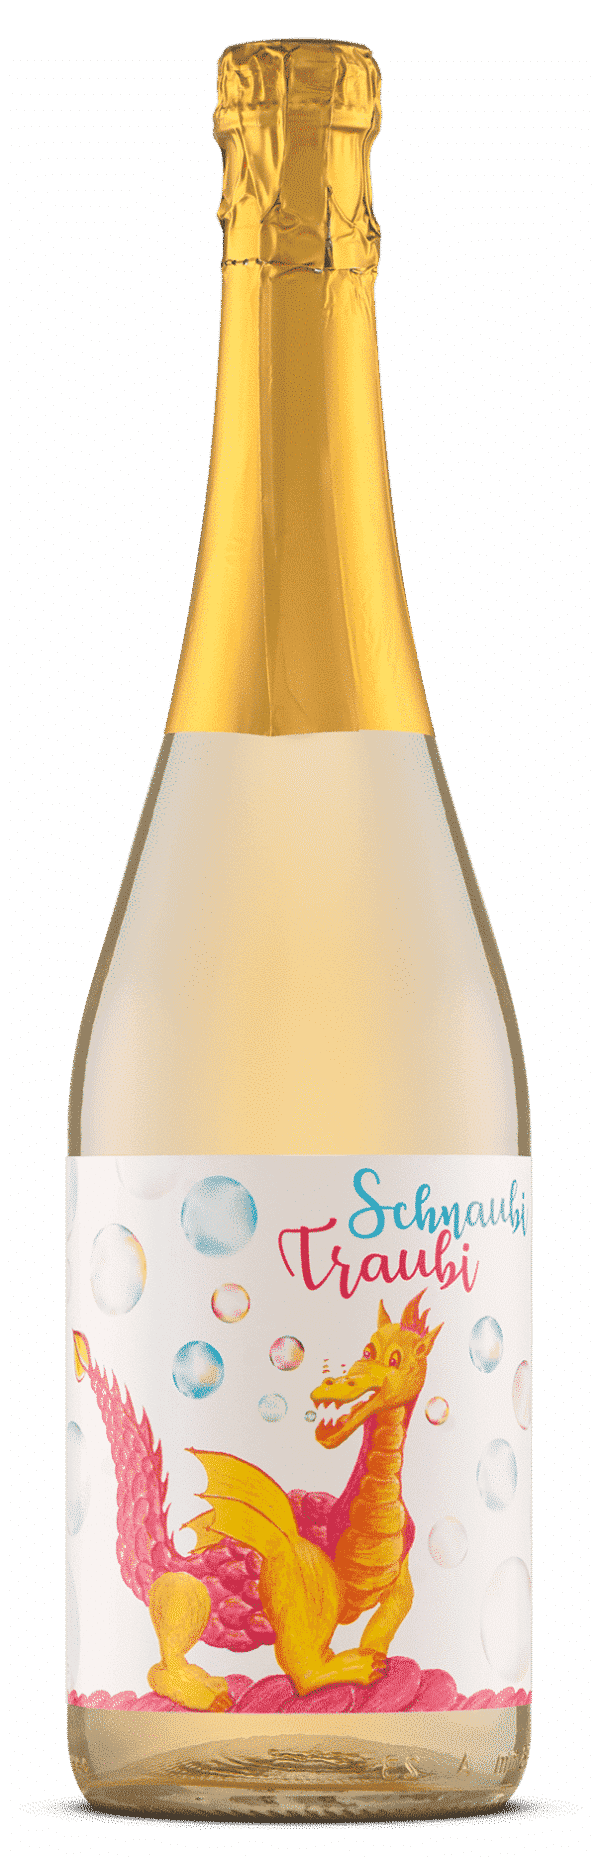 Children's champagne SchnaubiTraubi